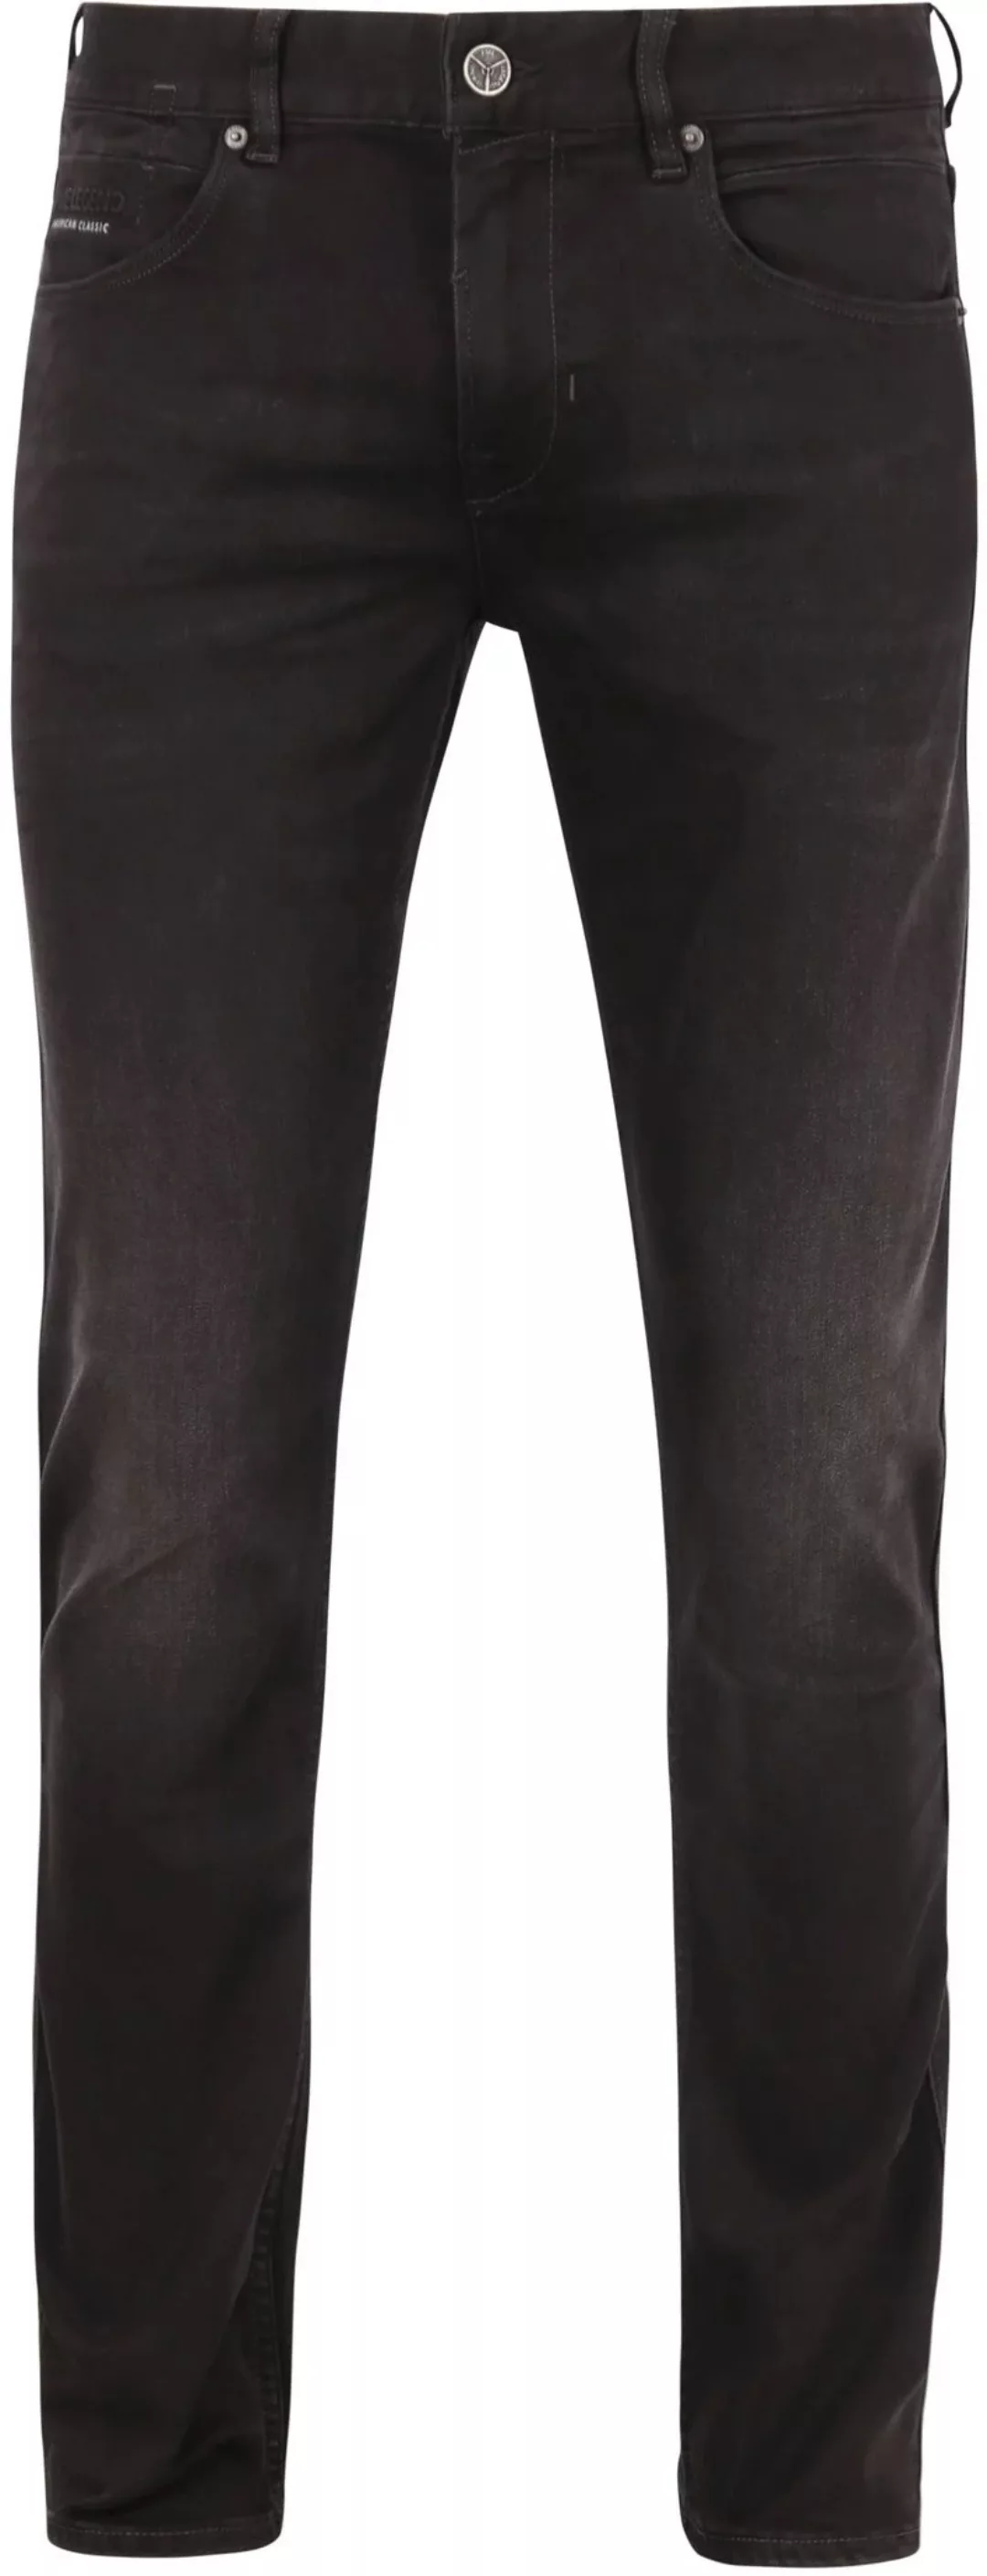 PME Legend Nightflight Jeans Schwarz RBD - Größe W 35 - L 30 günstig online kaufen